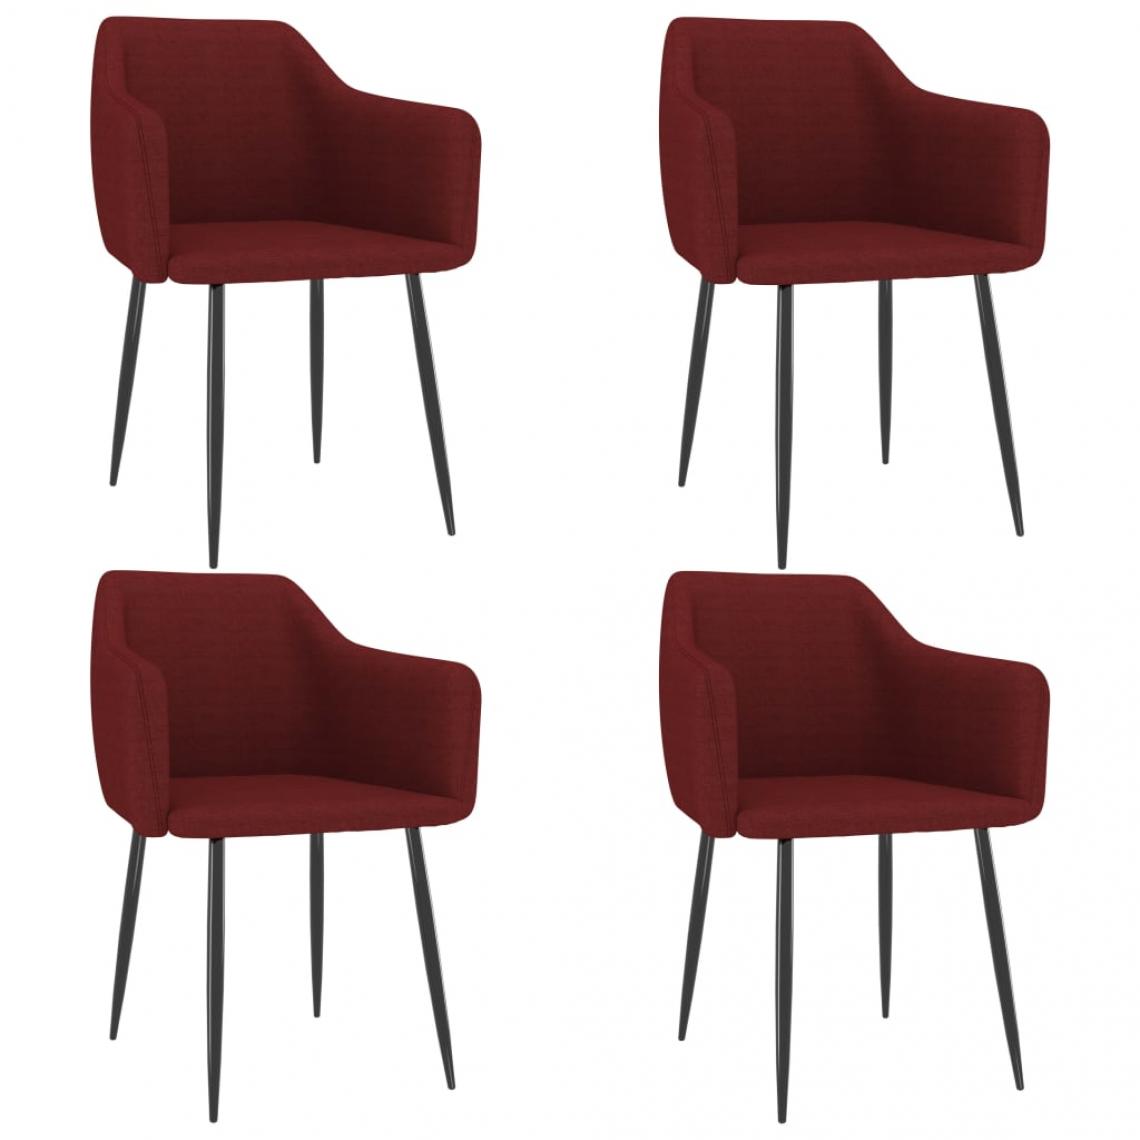 Decoshop26 - Lot de 4 chaises de salle à manger cuisine design moderne tissu rouge bordeaux CDS021952 - Chaises